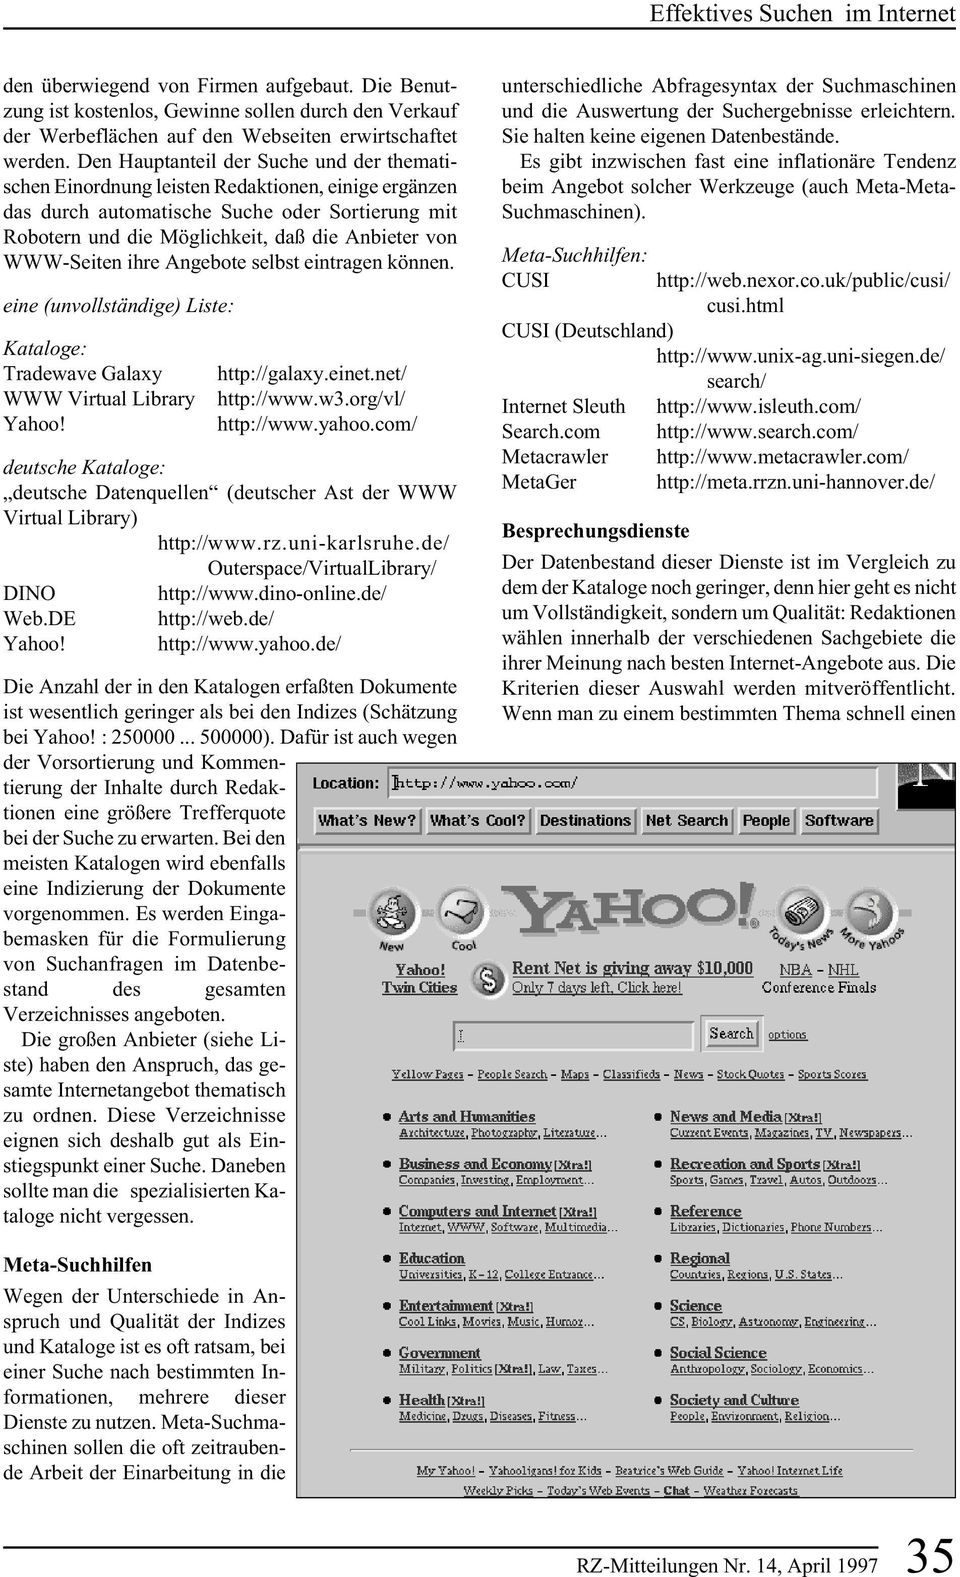 WWW-Seiten ihre Angebote selbst eintragen können. eine (unvollständige) Liste: Kataloge: Tradewave Galaxy WWW Virtual Library Yahoo! http://galaxy.einet.net/ http://www.w3.org/vl/ http://www.yahoo.